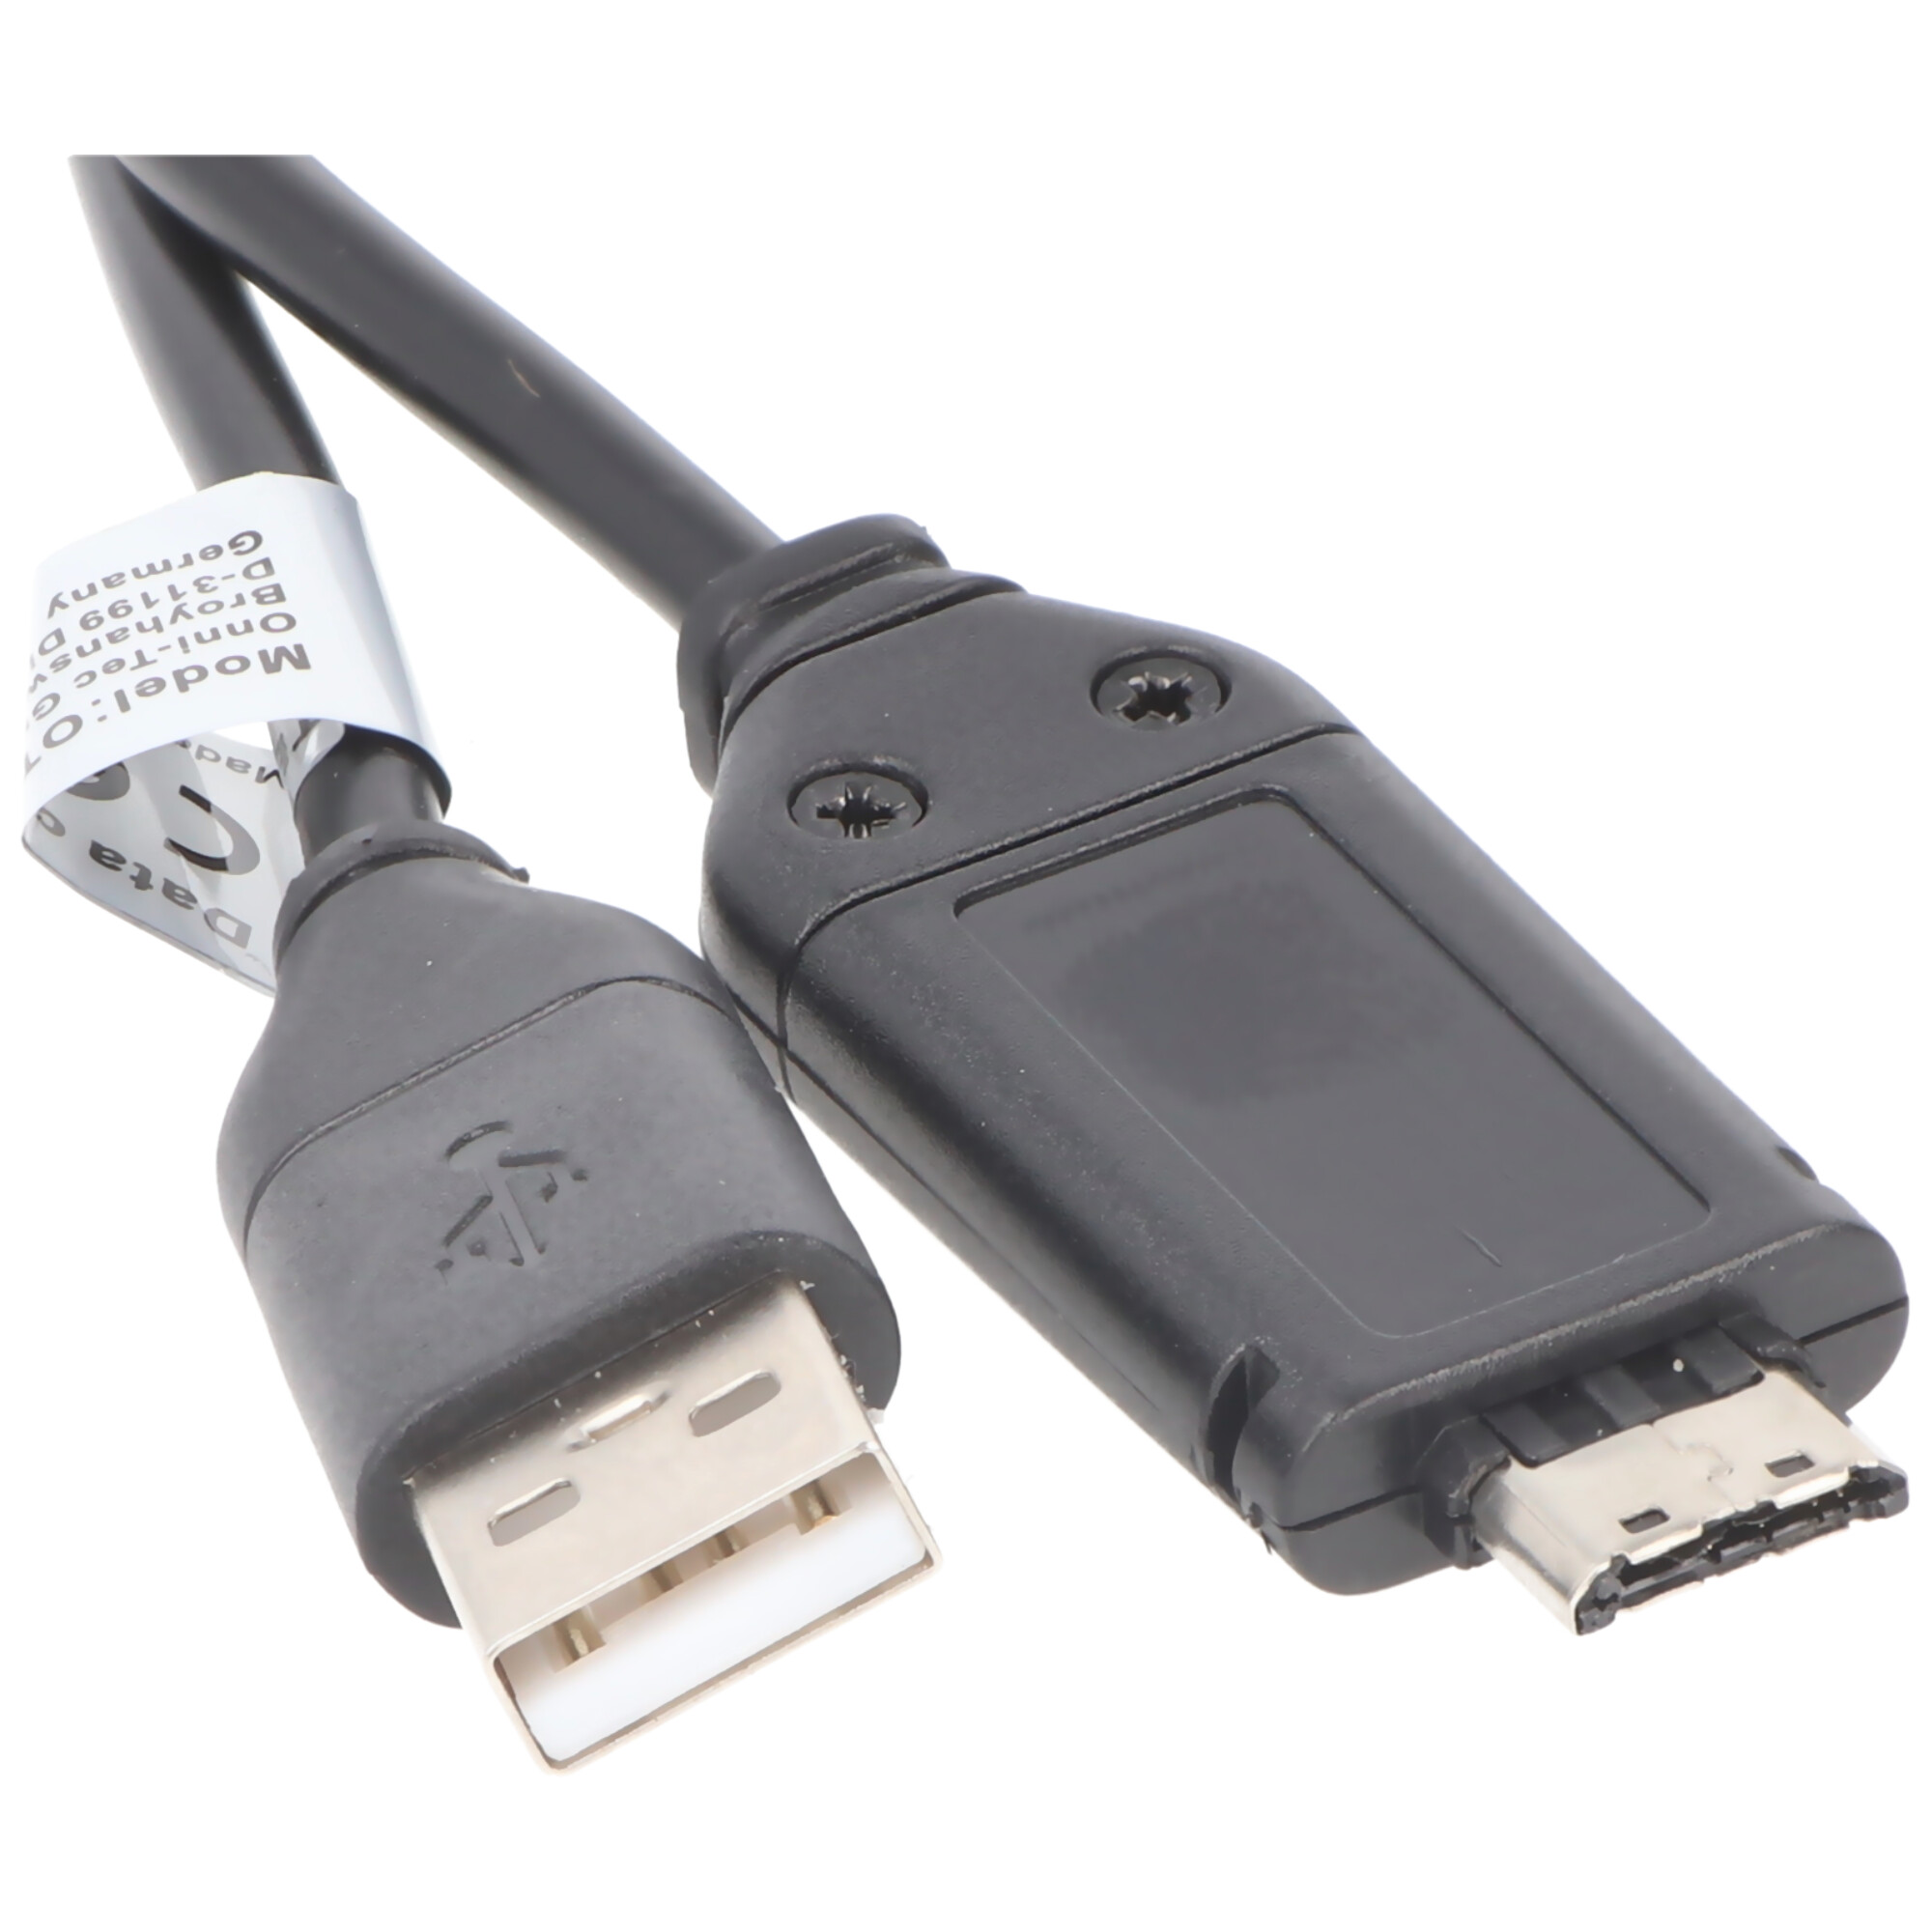 USB-Verbindungskabel passend für Samsung ES55, PL20, WB5500, WB600, WP10